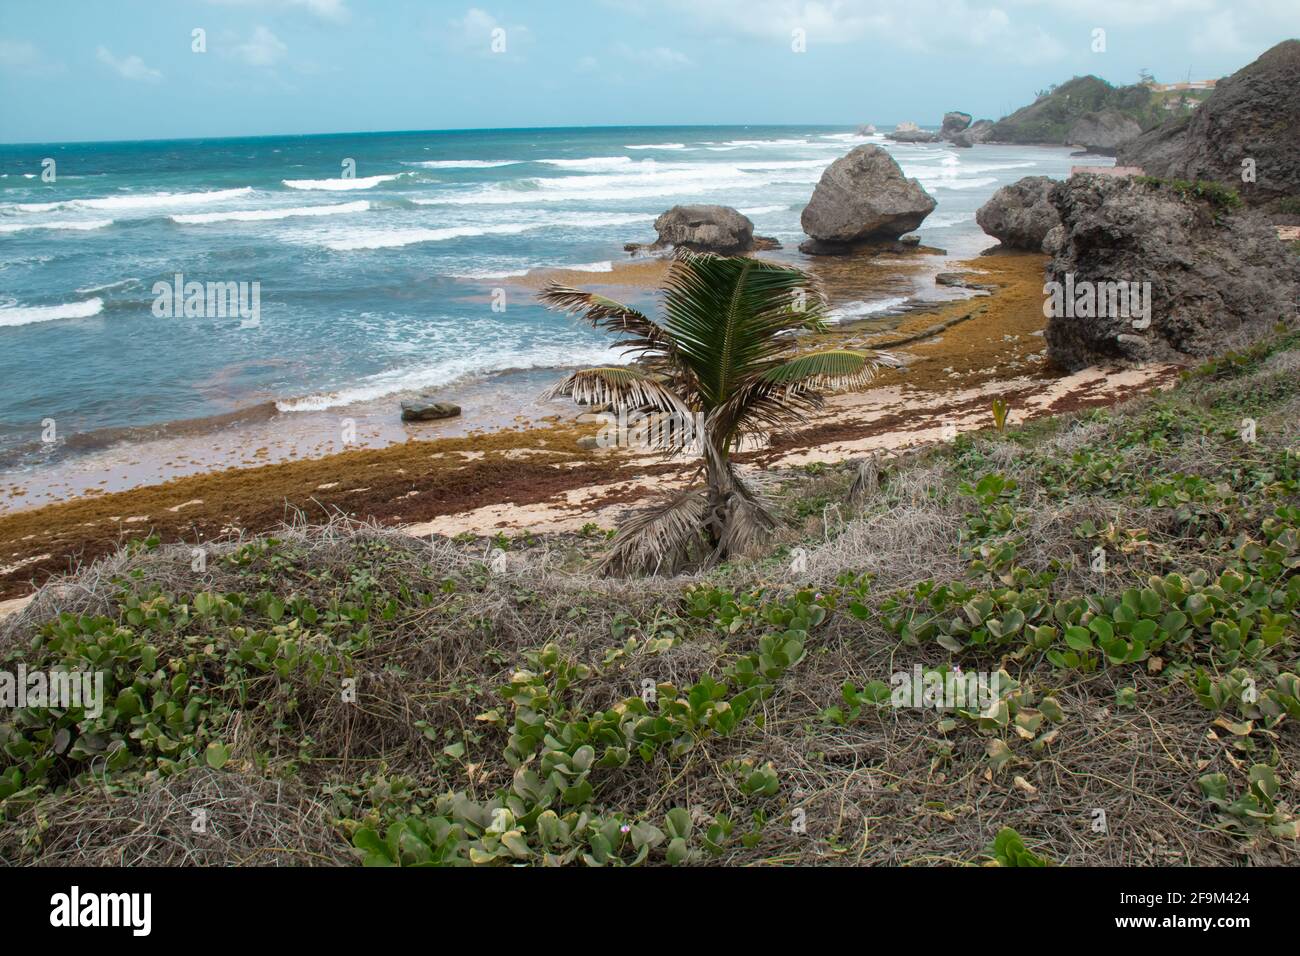 Foto der Straßenansicht des Strandes von Bathsheba an der Ostküste von Barbados. Starke Winde, wehende Palmen, starke brechende Wellen bei Ebbe. Stockfoto